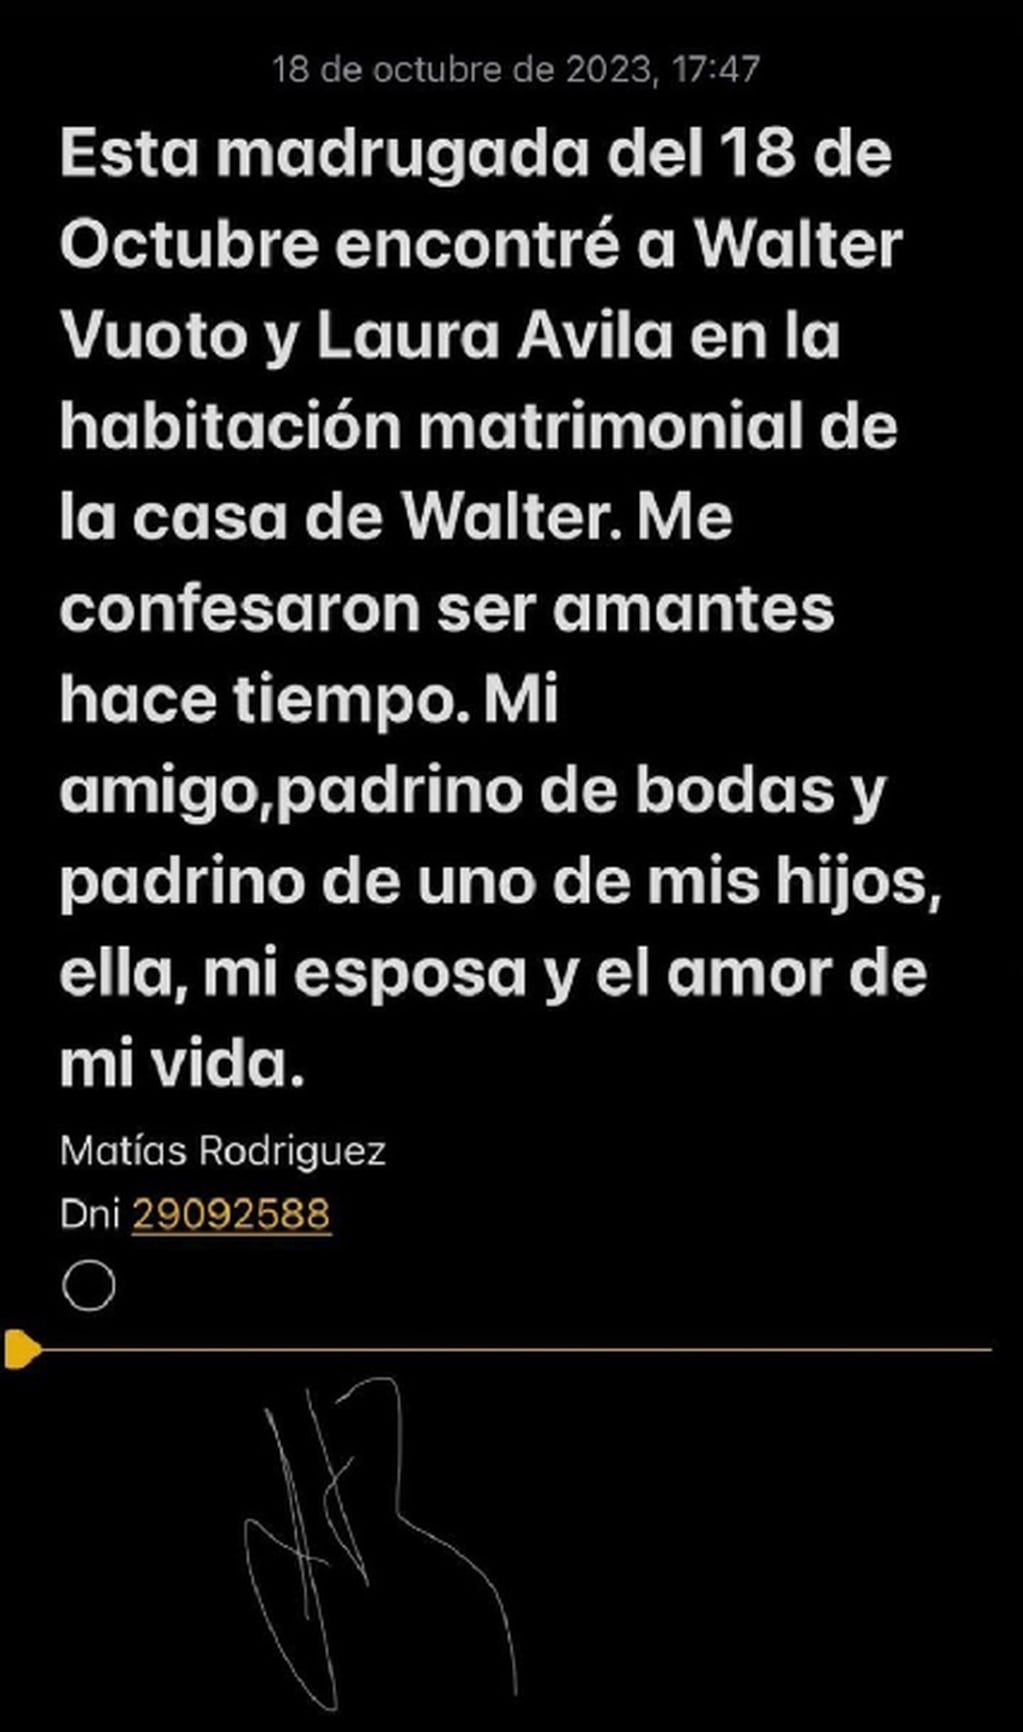 El mensaje de Matías Rodríguez antes de quitarse la vida. Foto Captura: X / @PonzistaAnti